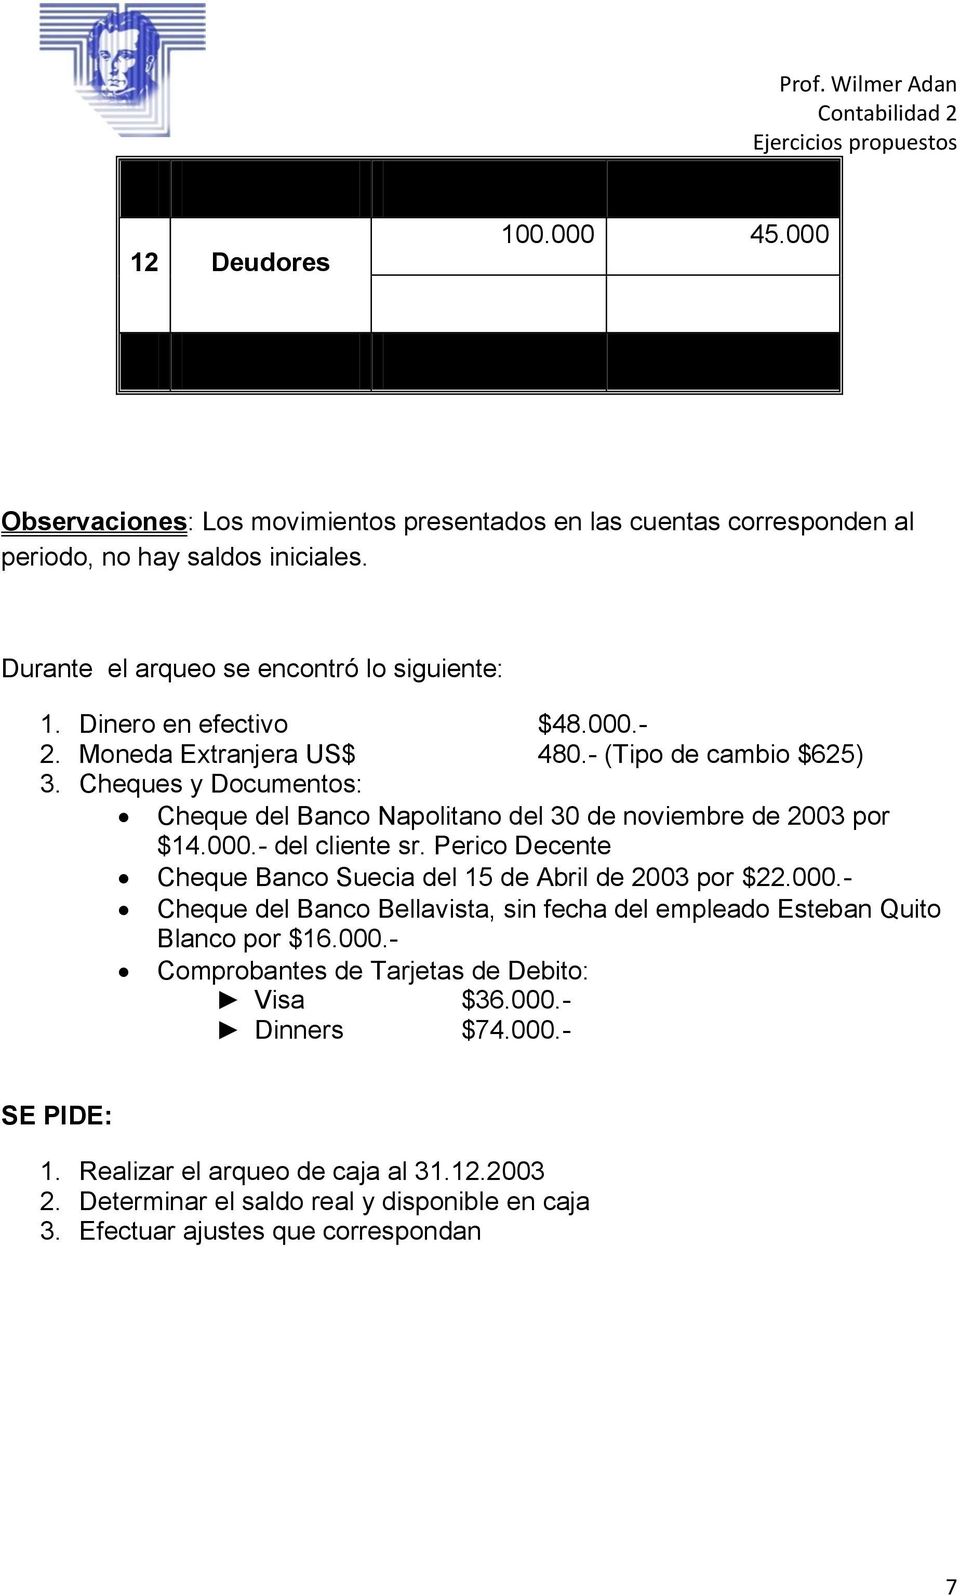 Perico Decente Cheque Banco Suecia del 1 de Abril de 2003 por $22.000.- Cheque del Banco Bellavista, sin fecha del empleado Esteban Quito Blanco por $16.000.- Comprobantes de Tarjetas de Debito: Visa $36.